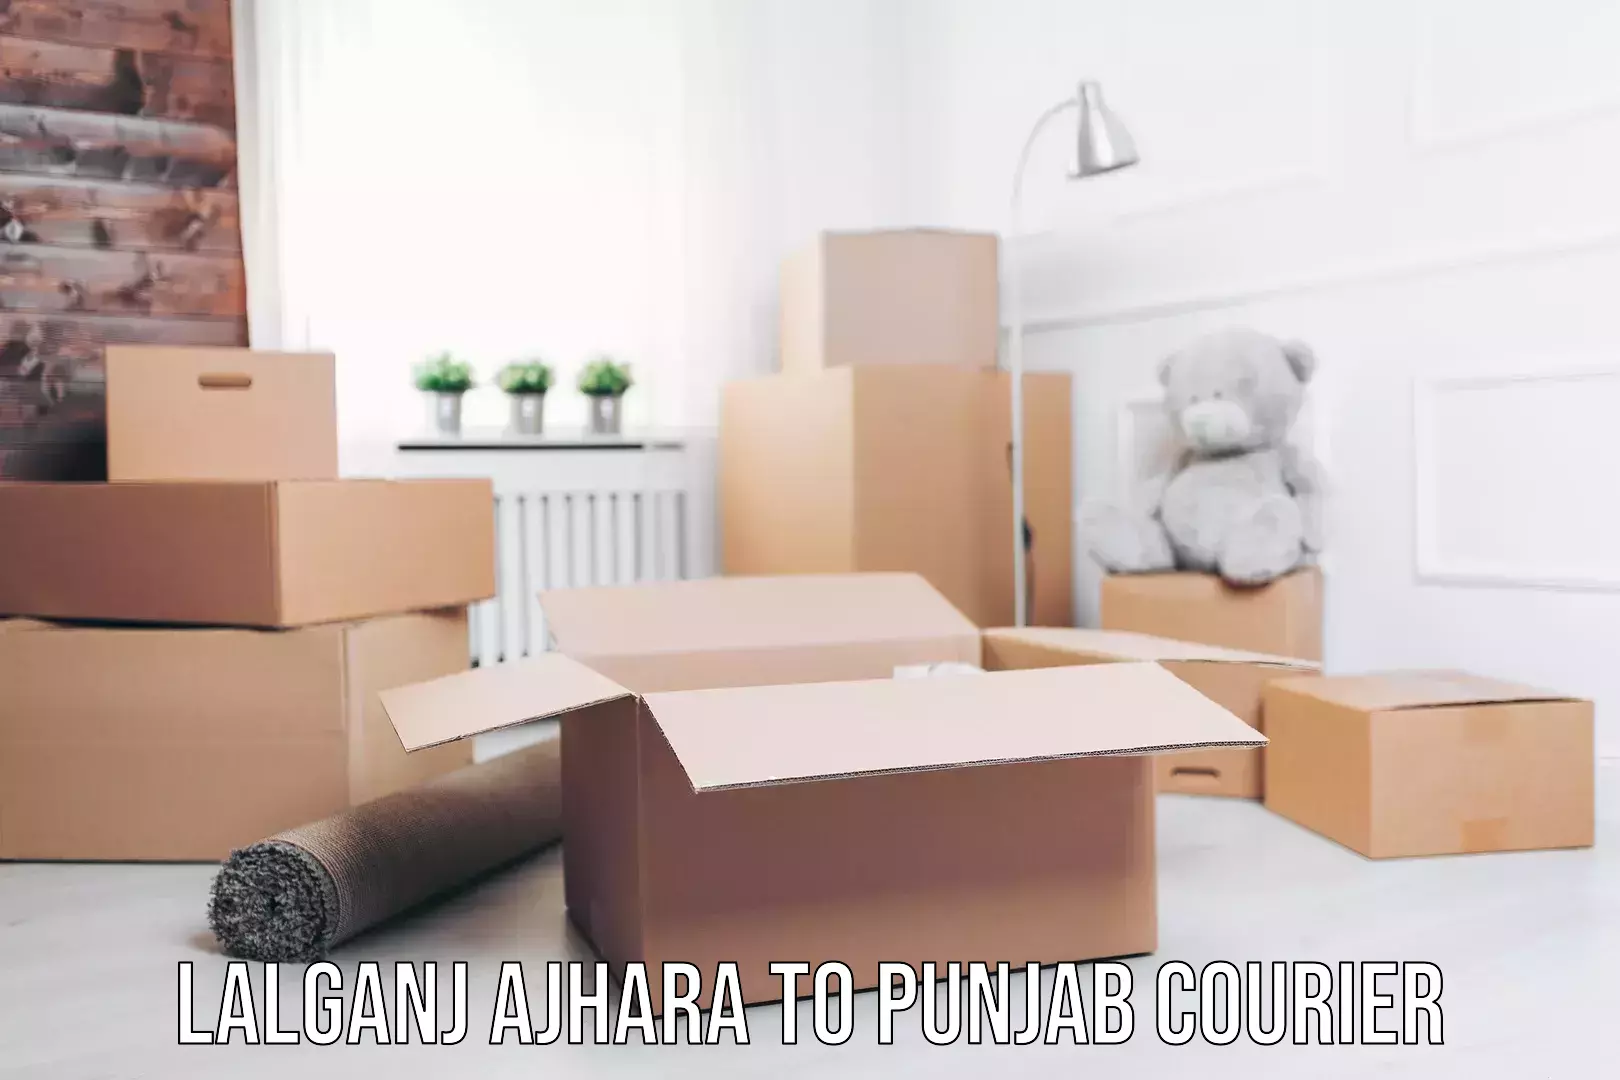 Efficient furniture transport Lalganj Ajhara to Punjab